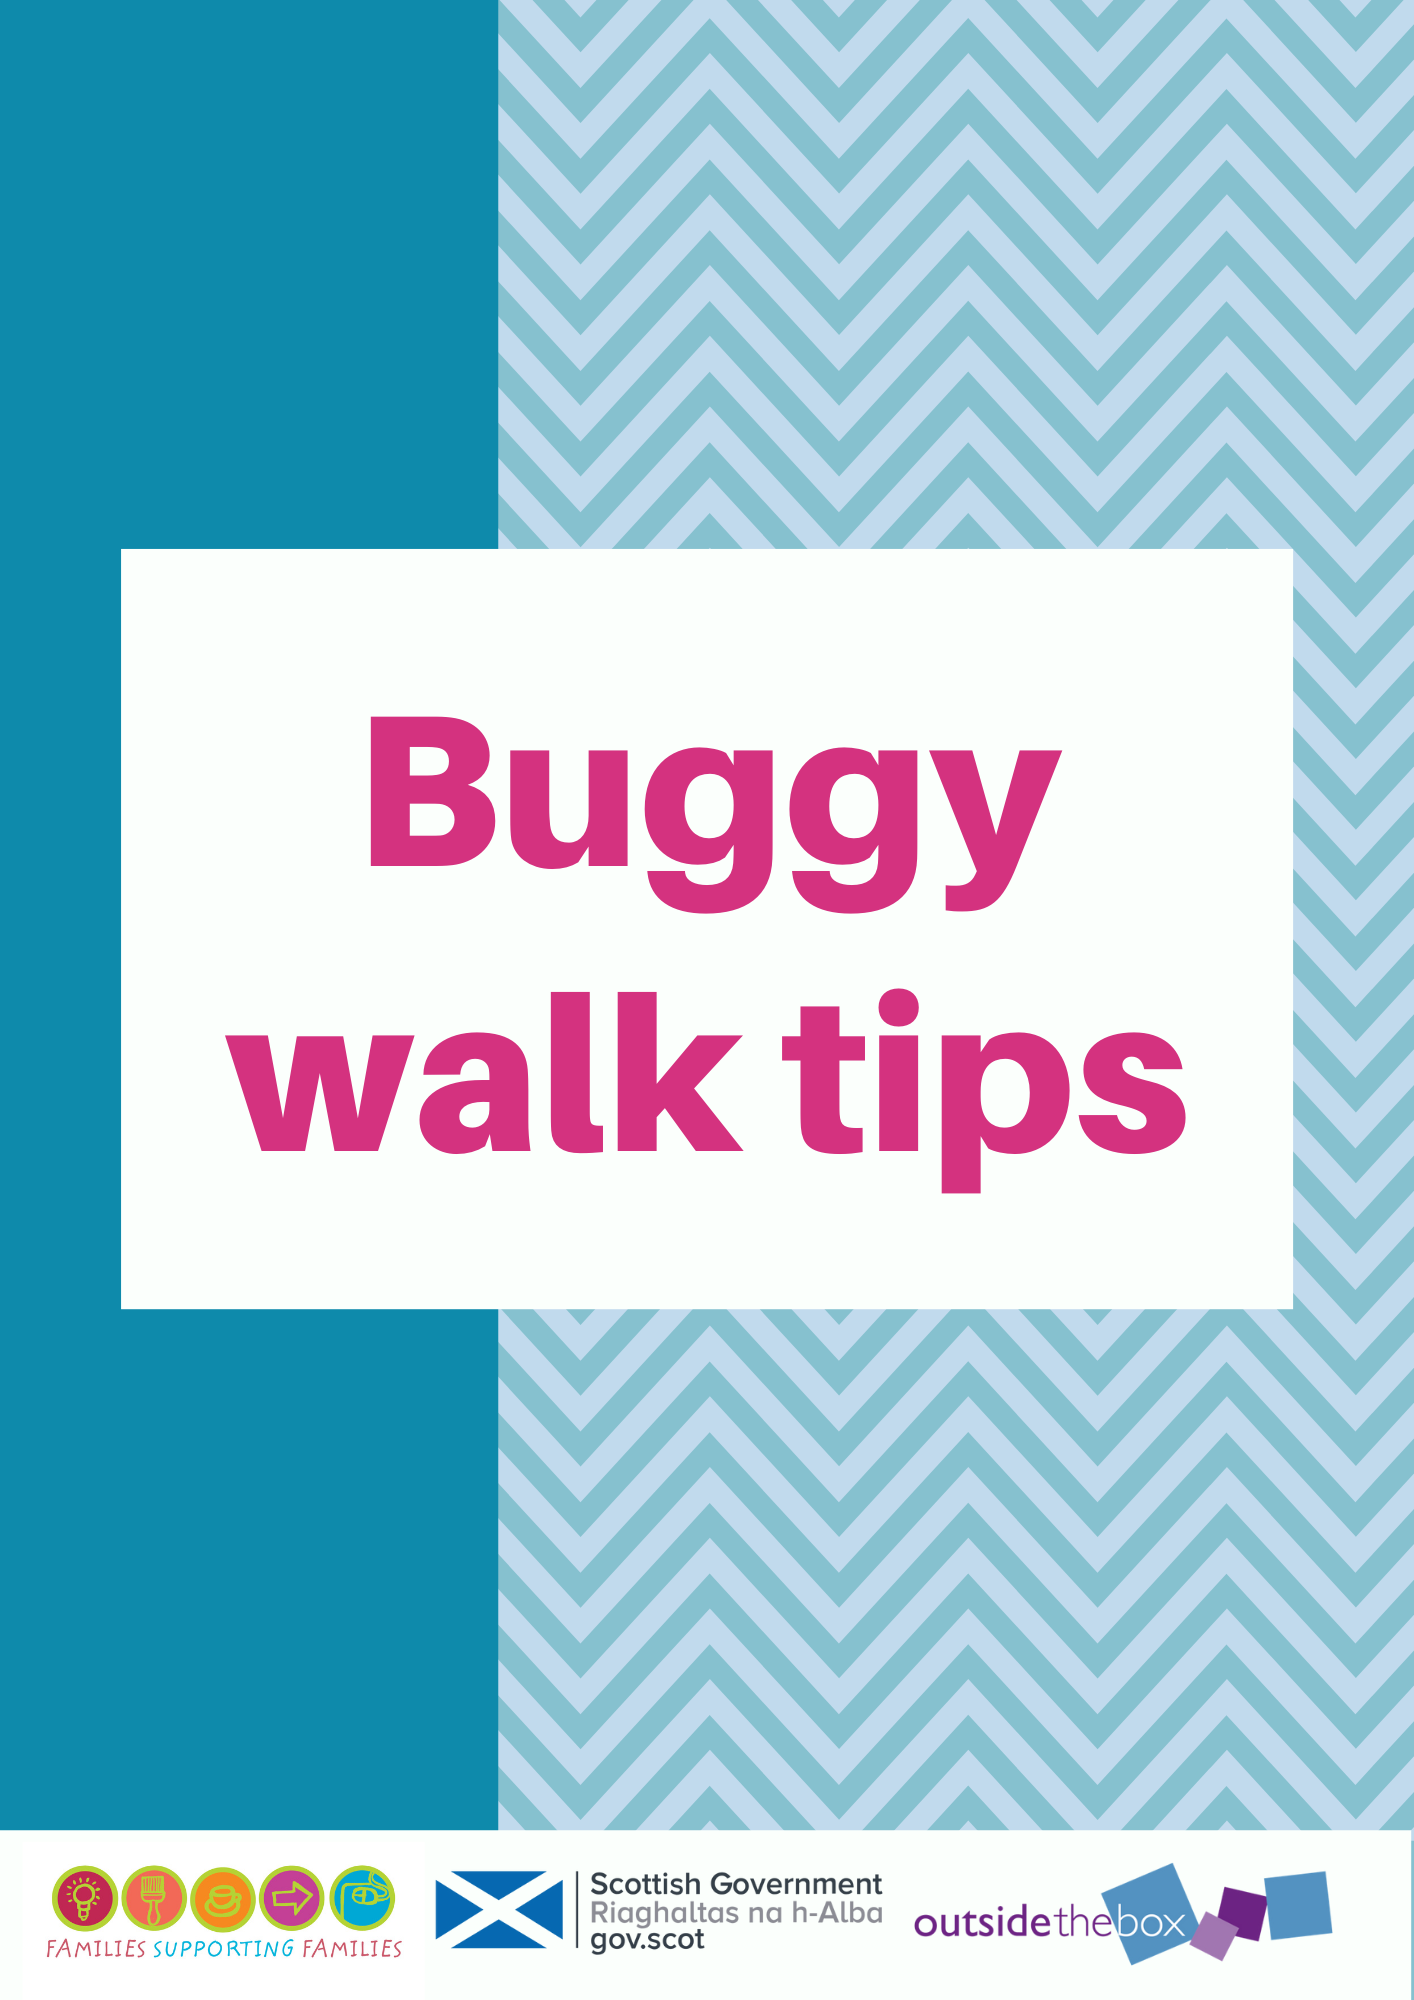 Buggy walk tips